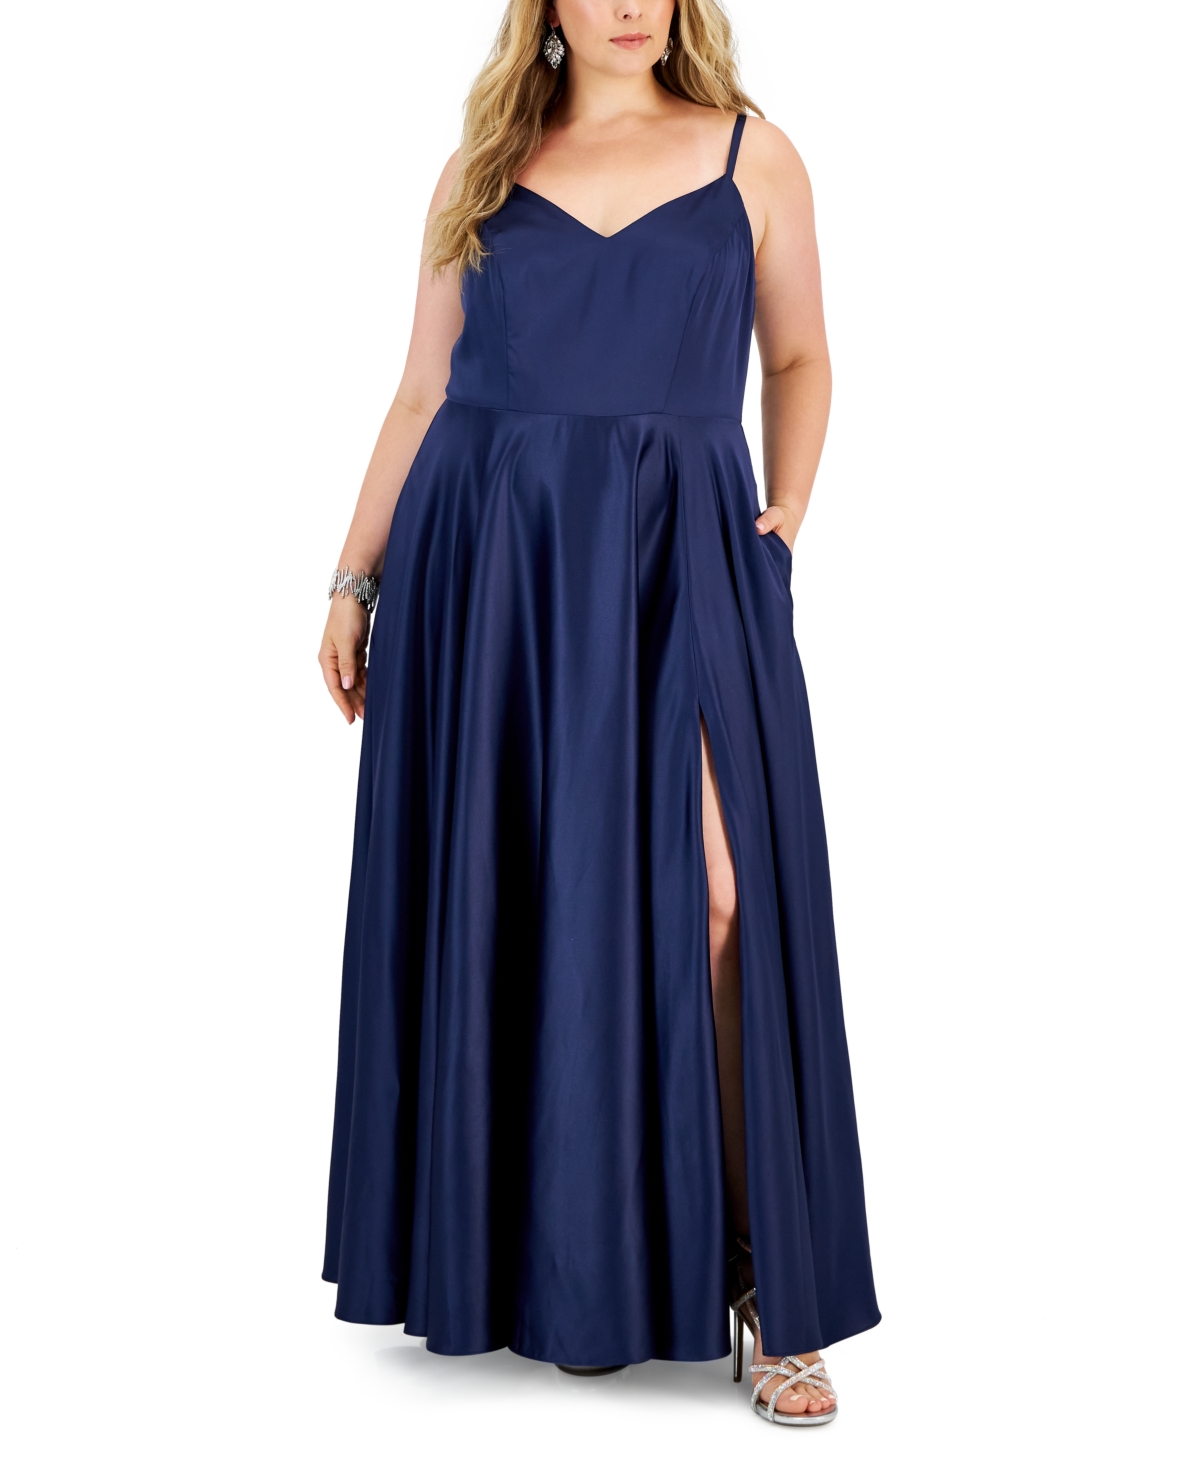 Trendy Plus Size Satin Sleeveless Gown - Navy